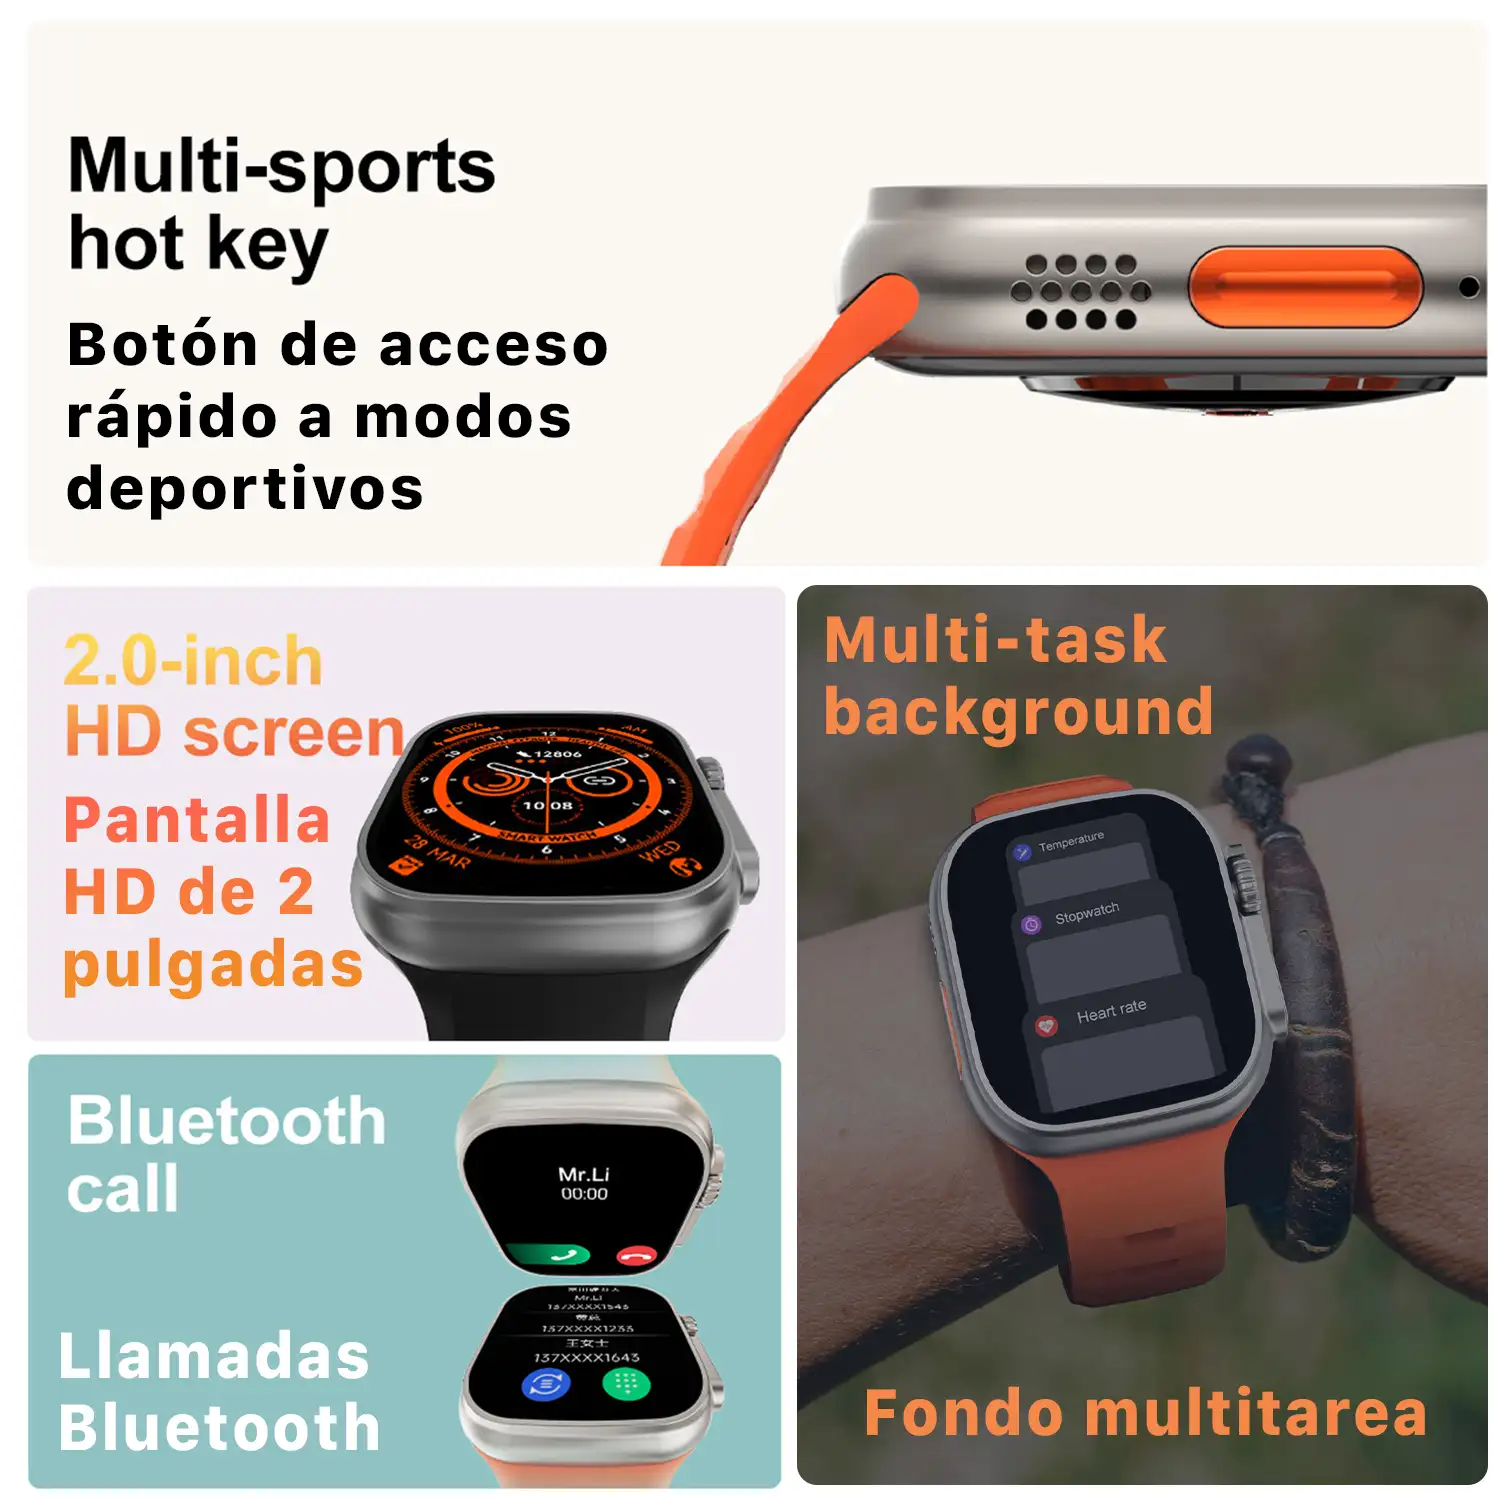 Smartwatch TRAIL DAM8 con pantalla de 2 pulgadas HR y función Always-On. Widgets personalizables. Correa de Nylon.